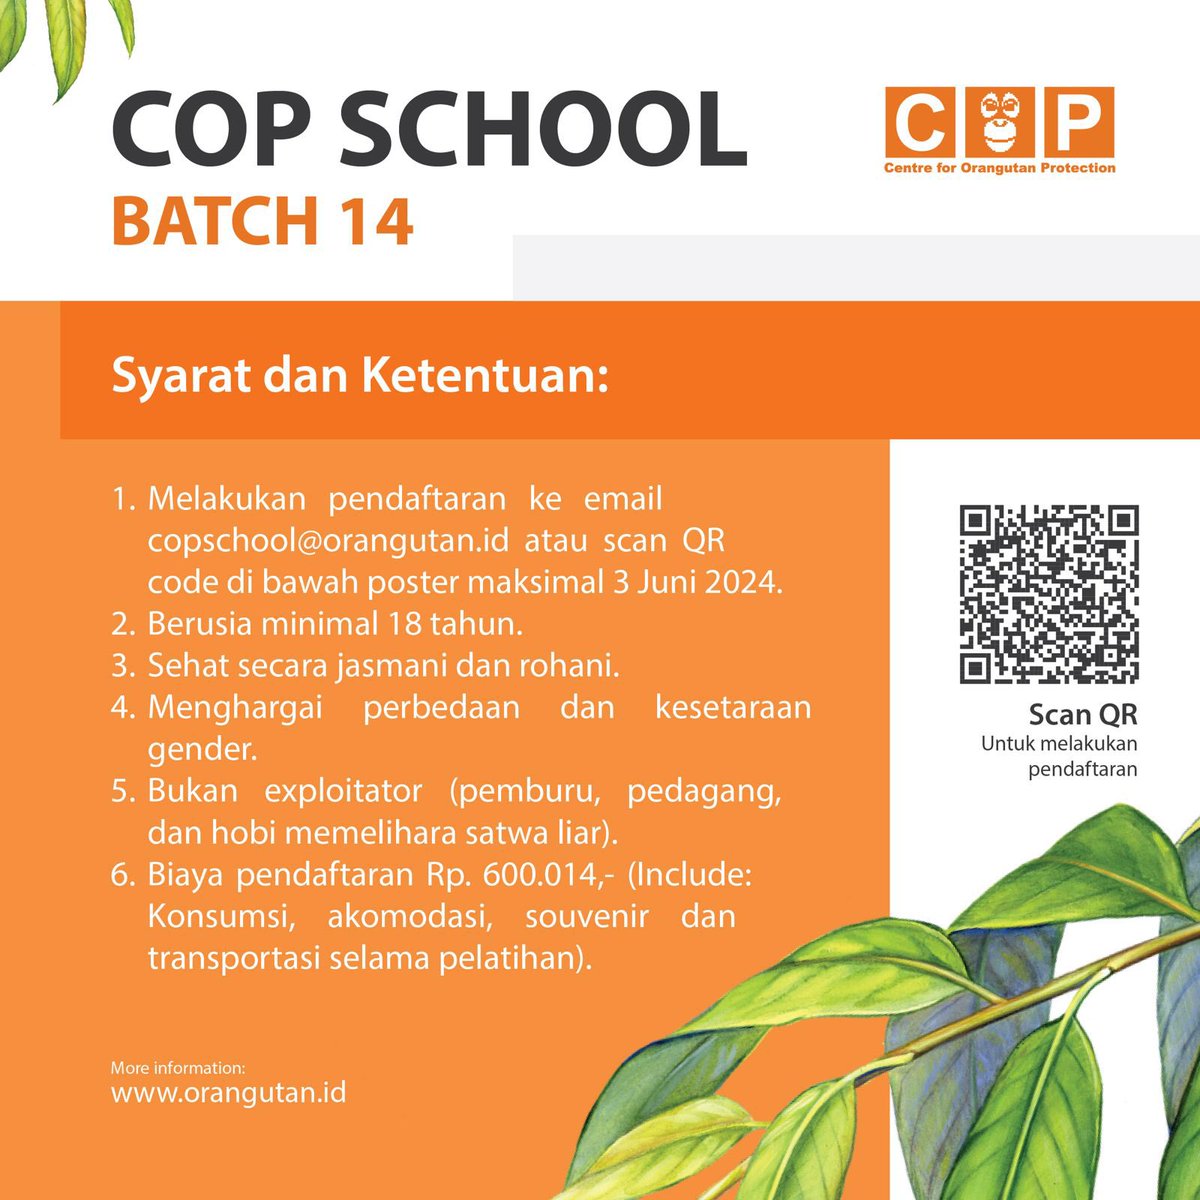 Yuk ikutan COP School Batch 14! Identifikasi peran yang bisa kamu berikan. Kita butuh orangutan. Info lebih lanjut email ke copschool@orangutan.id #copschool14